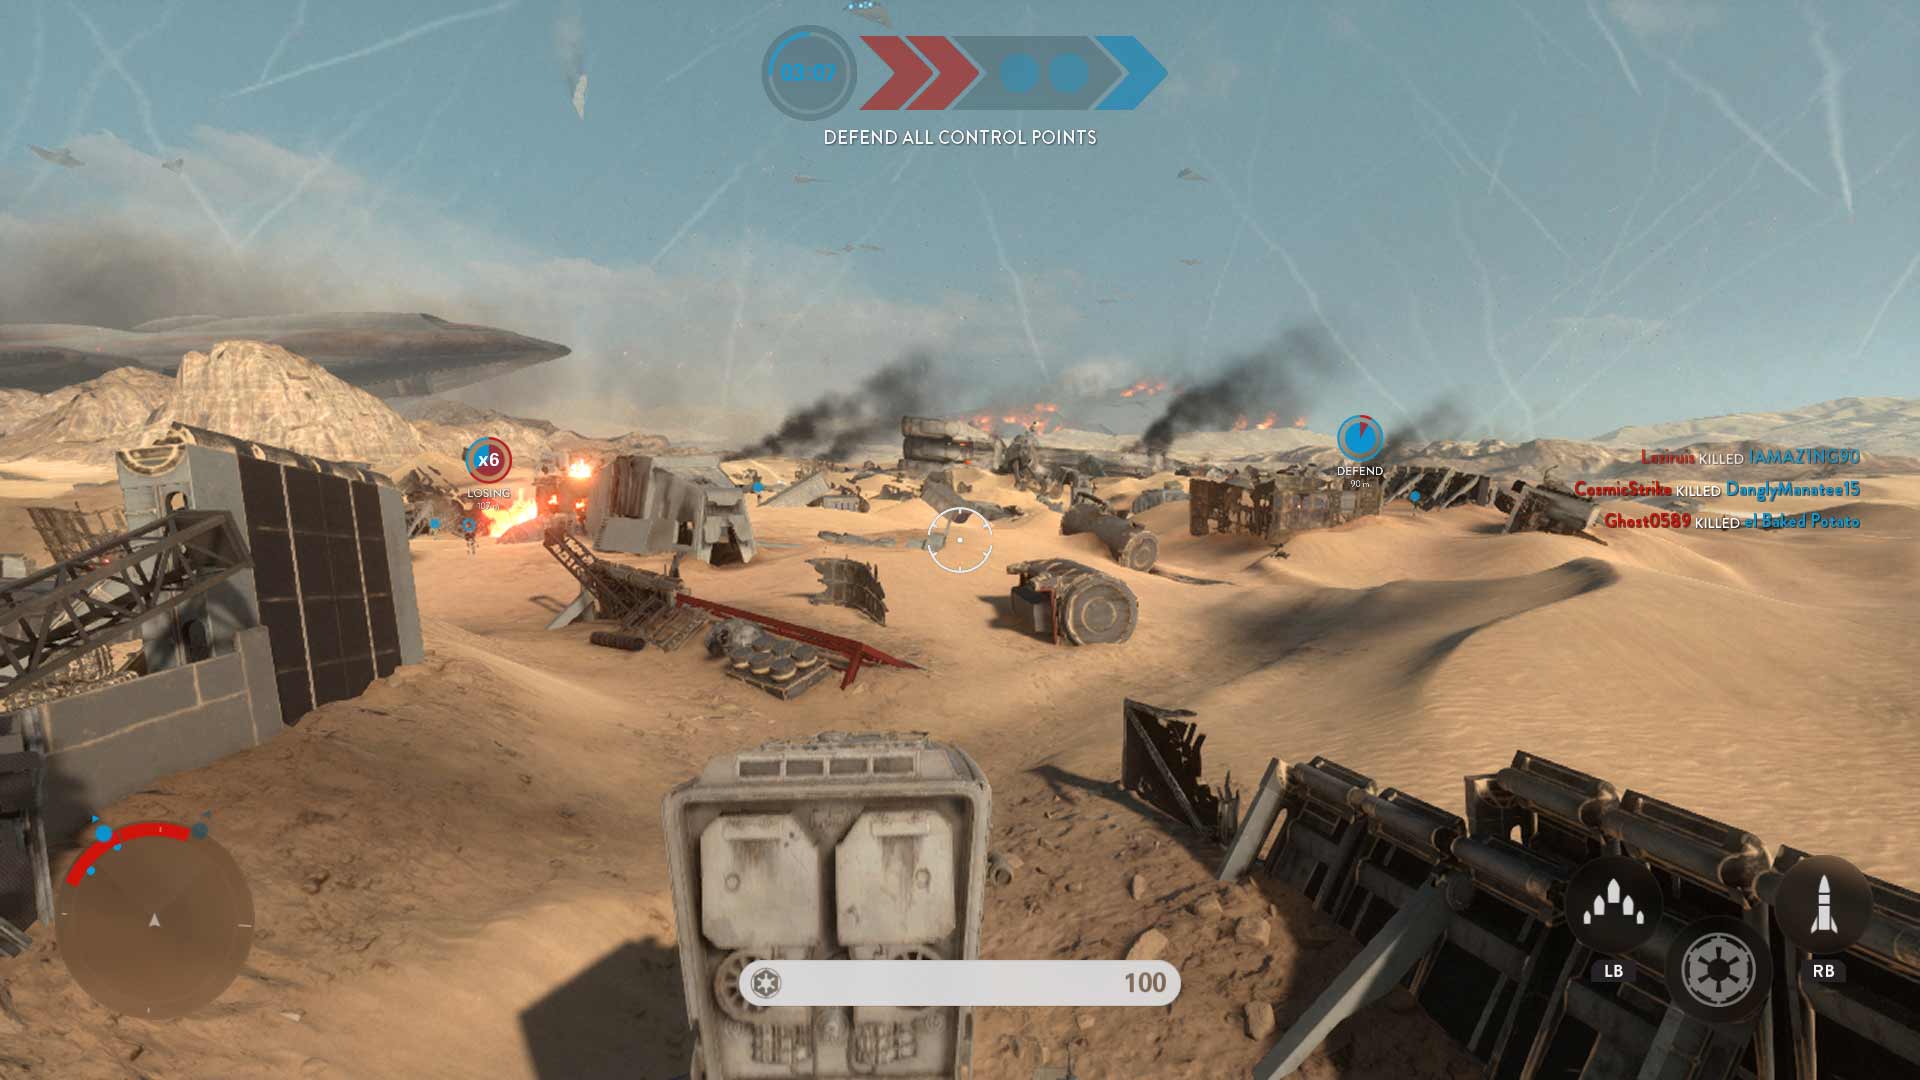 Star Wars Battlefront: Battle of Jakku Screenshot